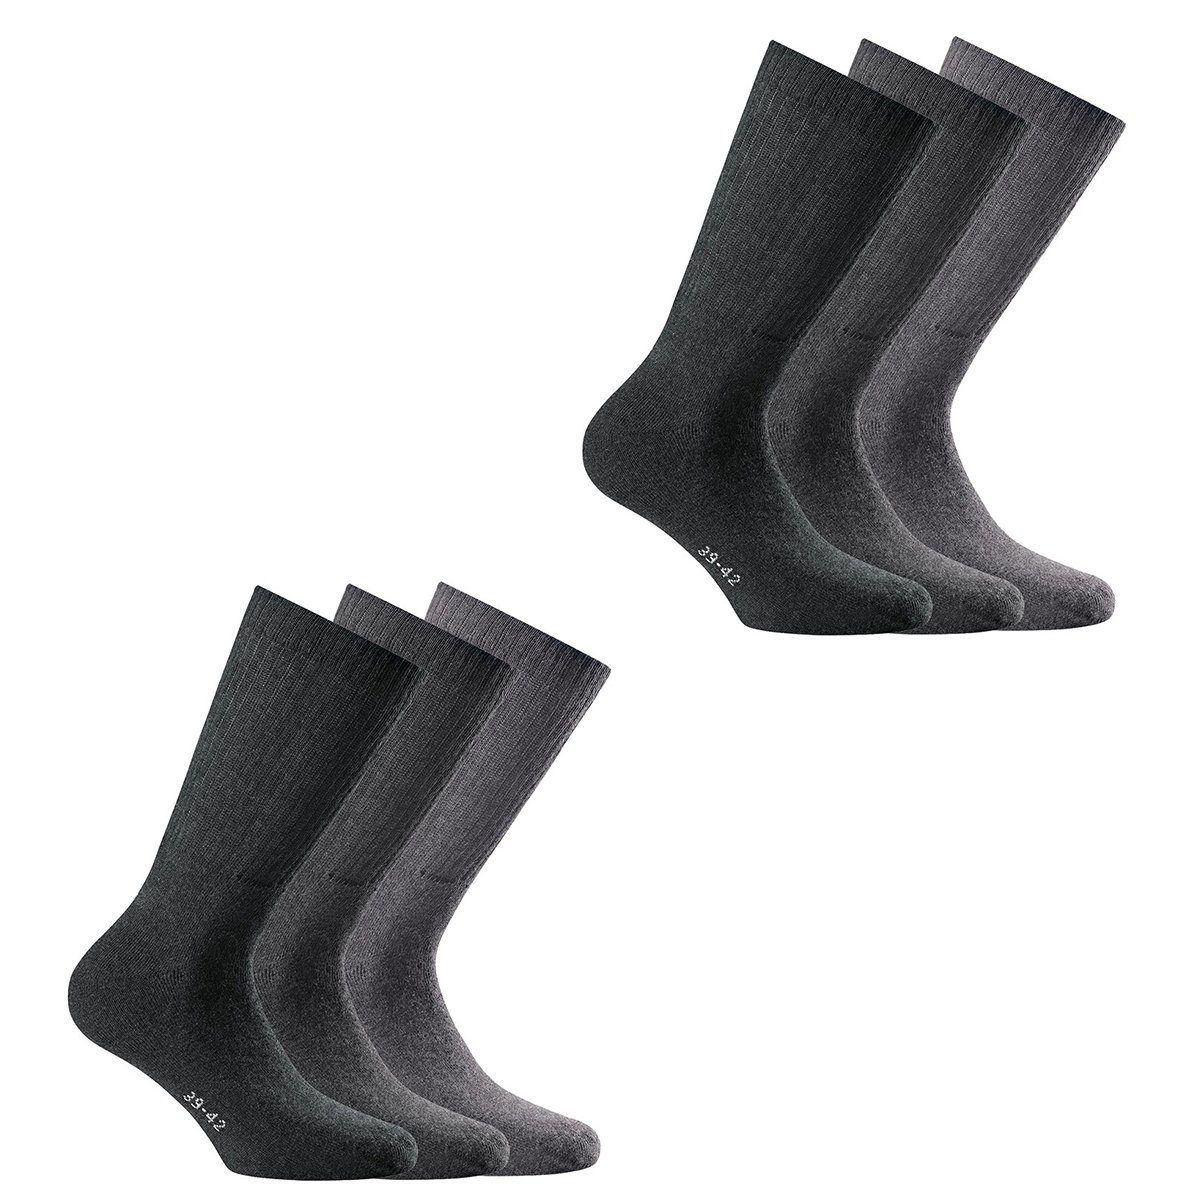 Rohner Socks Sportsocken Unisex Sport Socken, 6er Pack - Basic Sport Hellgrau/Grau/Dunkelgrau